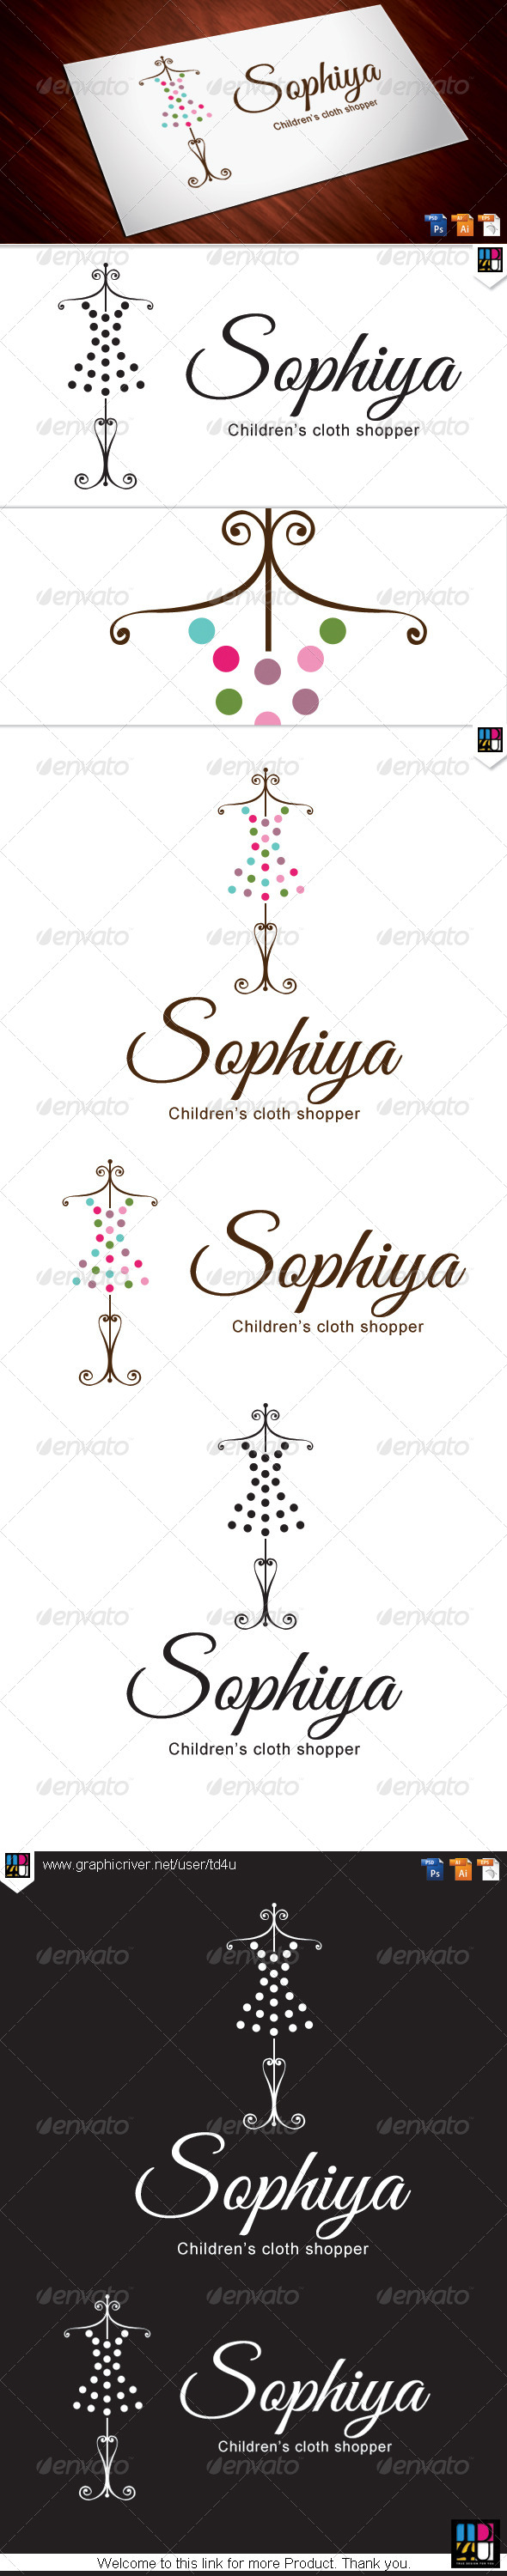 Sophiya